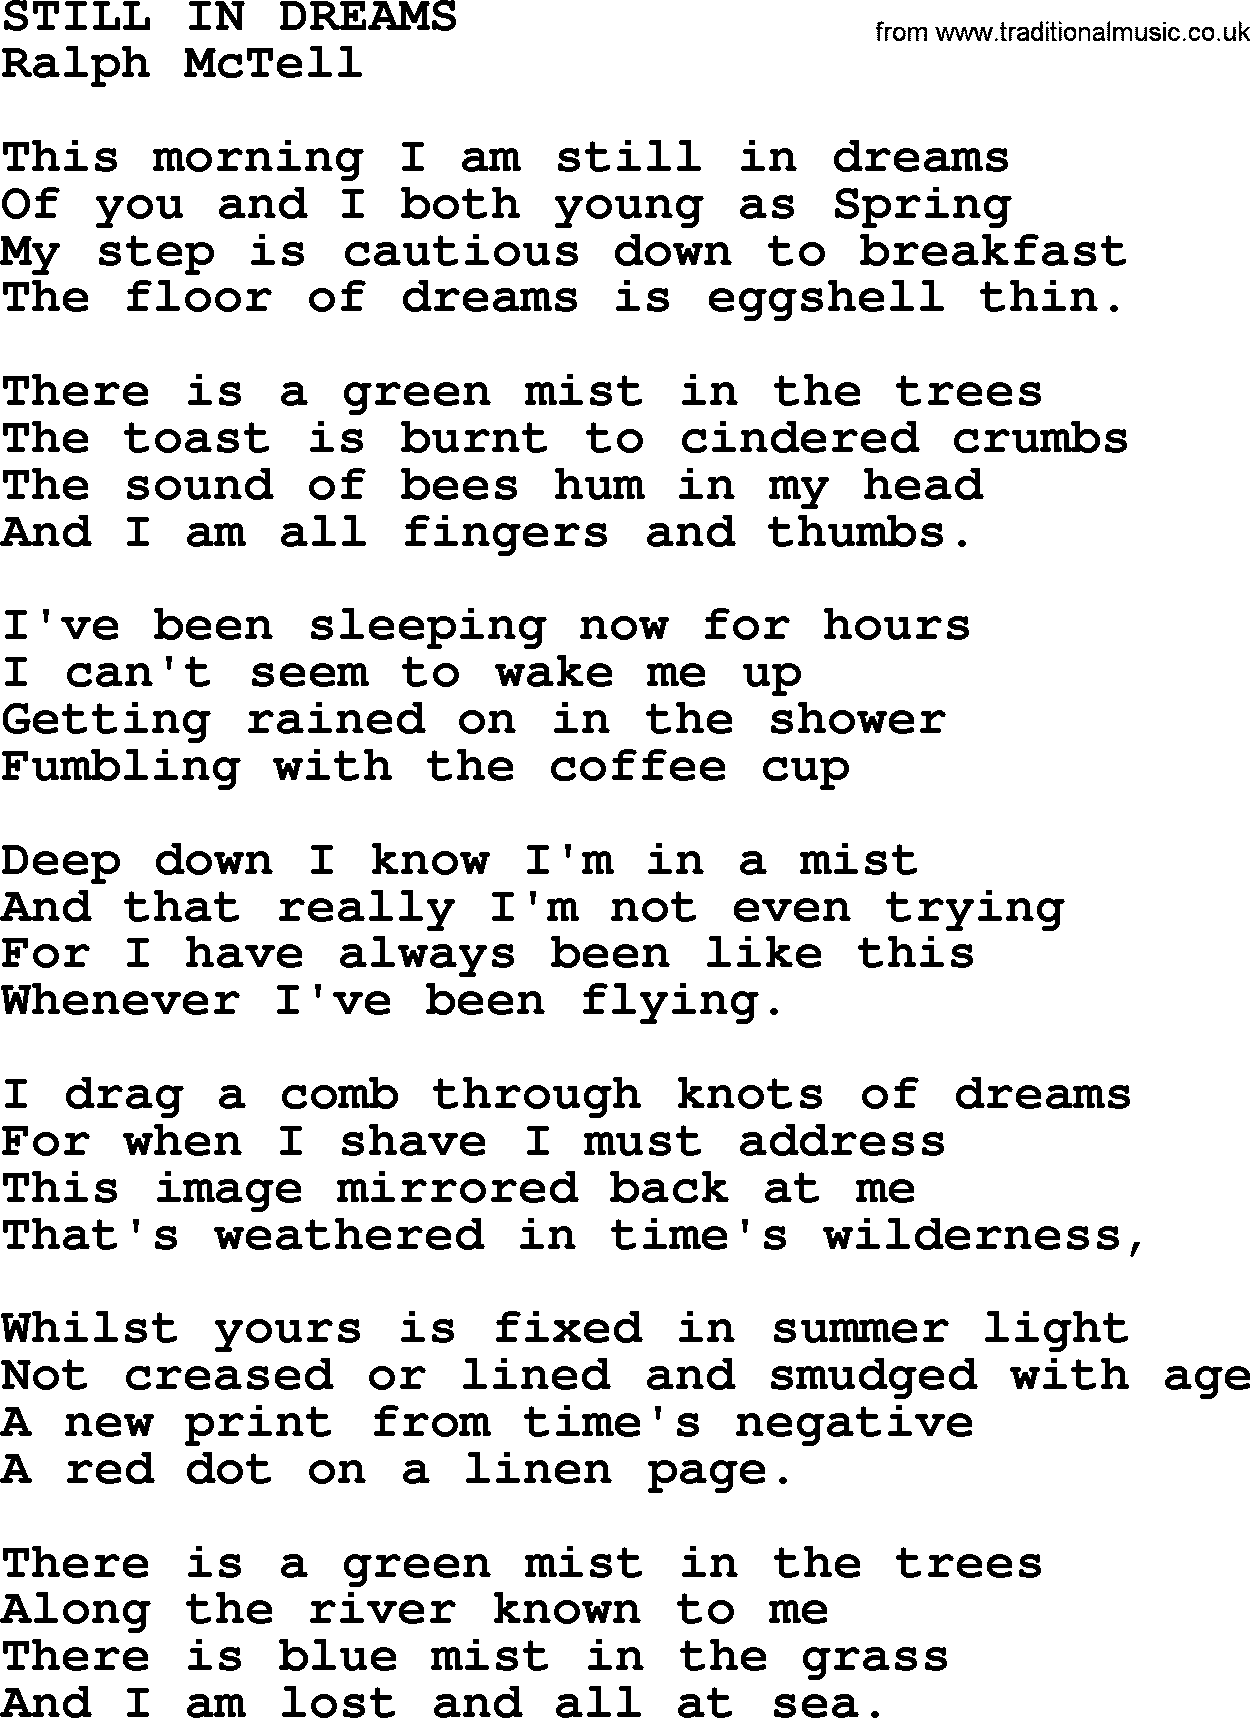 Ralph McTell Song: Still In Dreams, lyrics